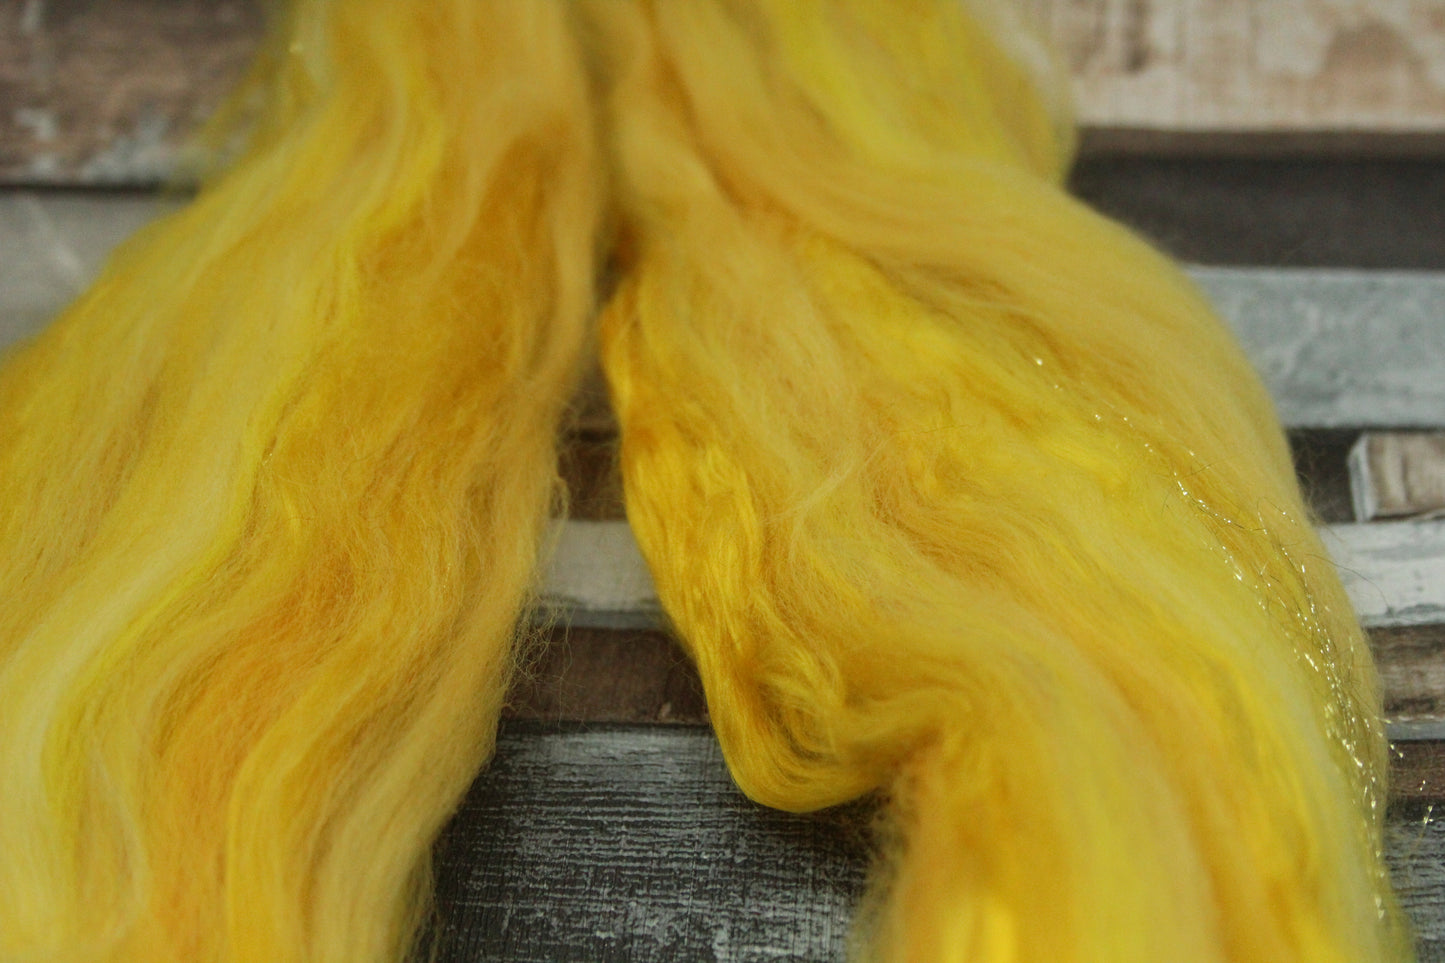 Merino Wool Blend - Yellow - 21 grams / 0.7 oz  - Fibre for felting, weaving or spinning